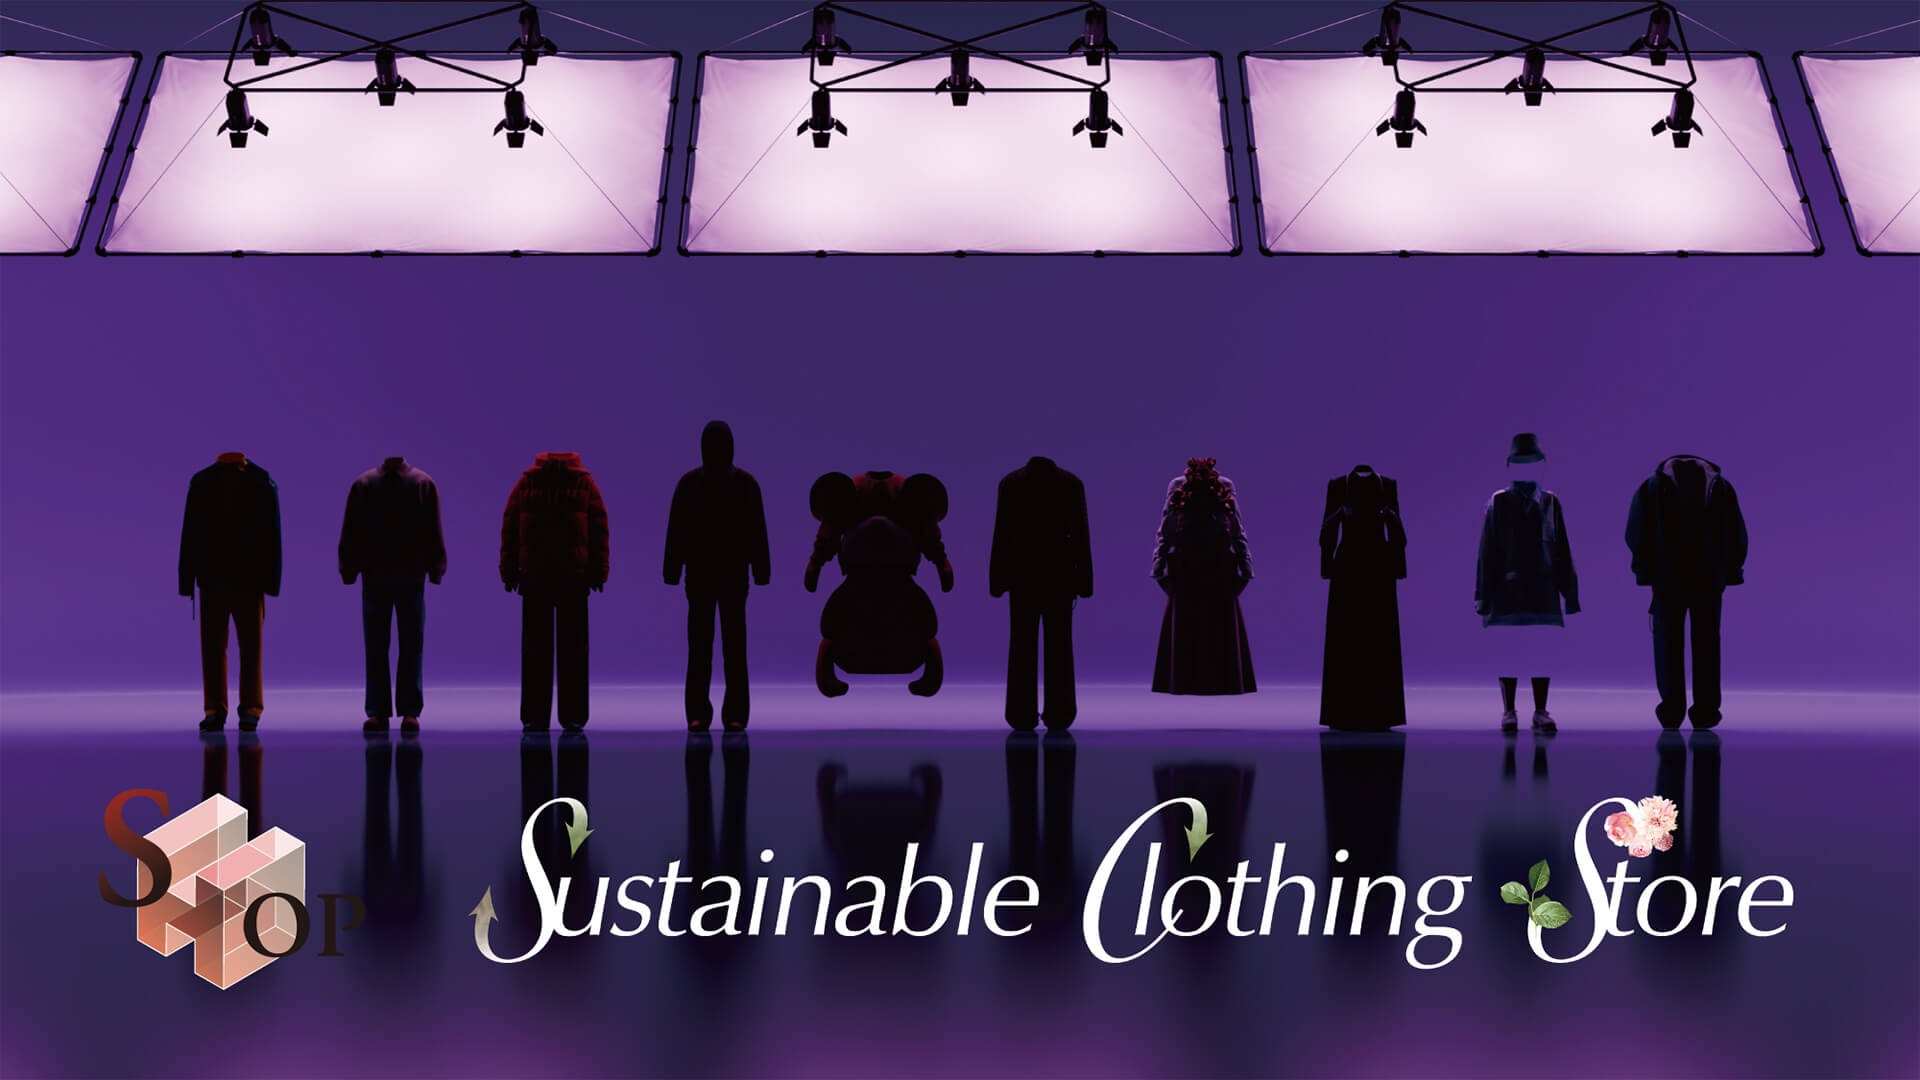 Sustainable clothing store image